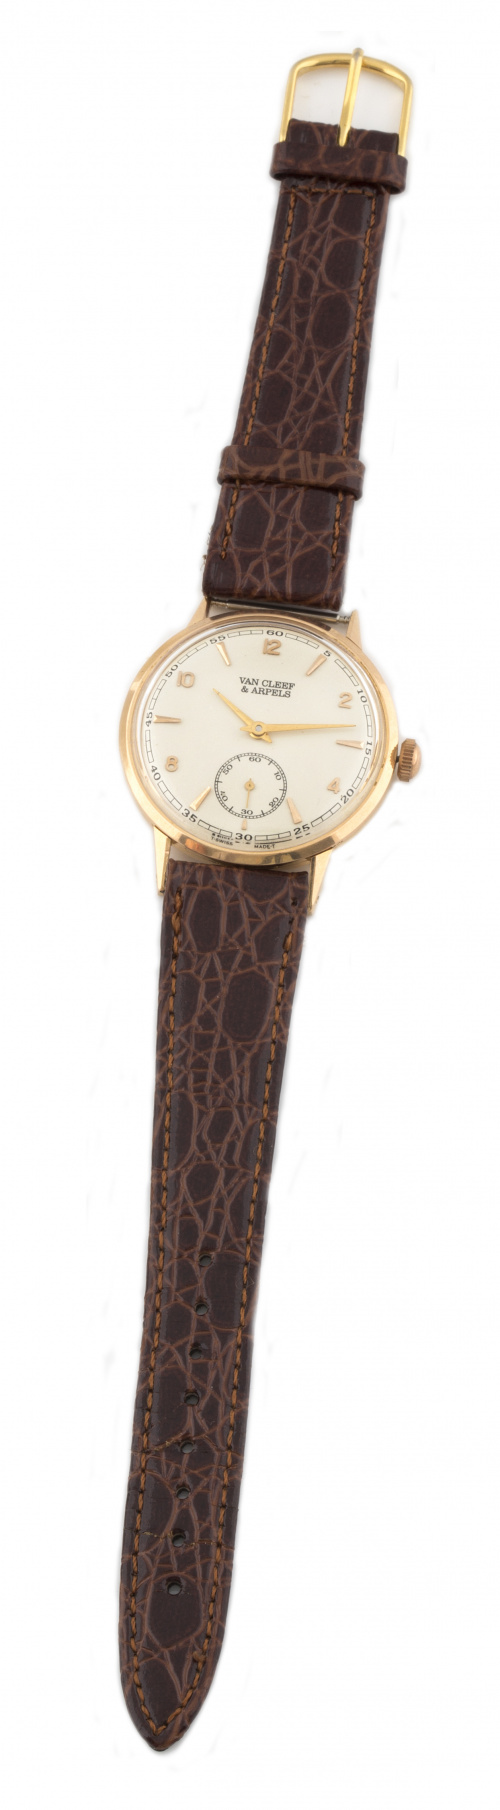 Reloj VAN CLEEF & ARPELS años 40 en oro de 18K.